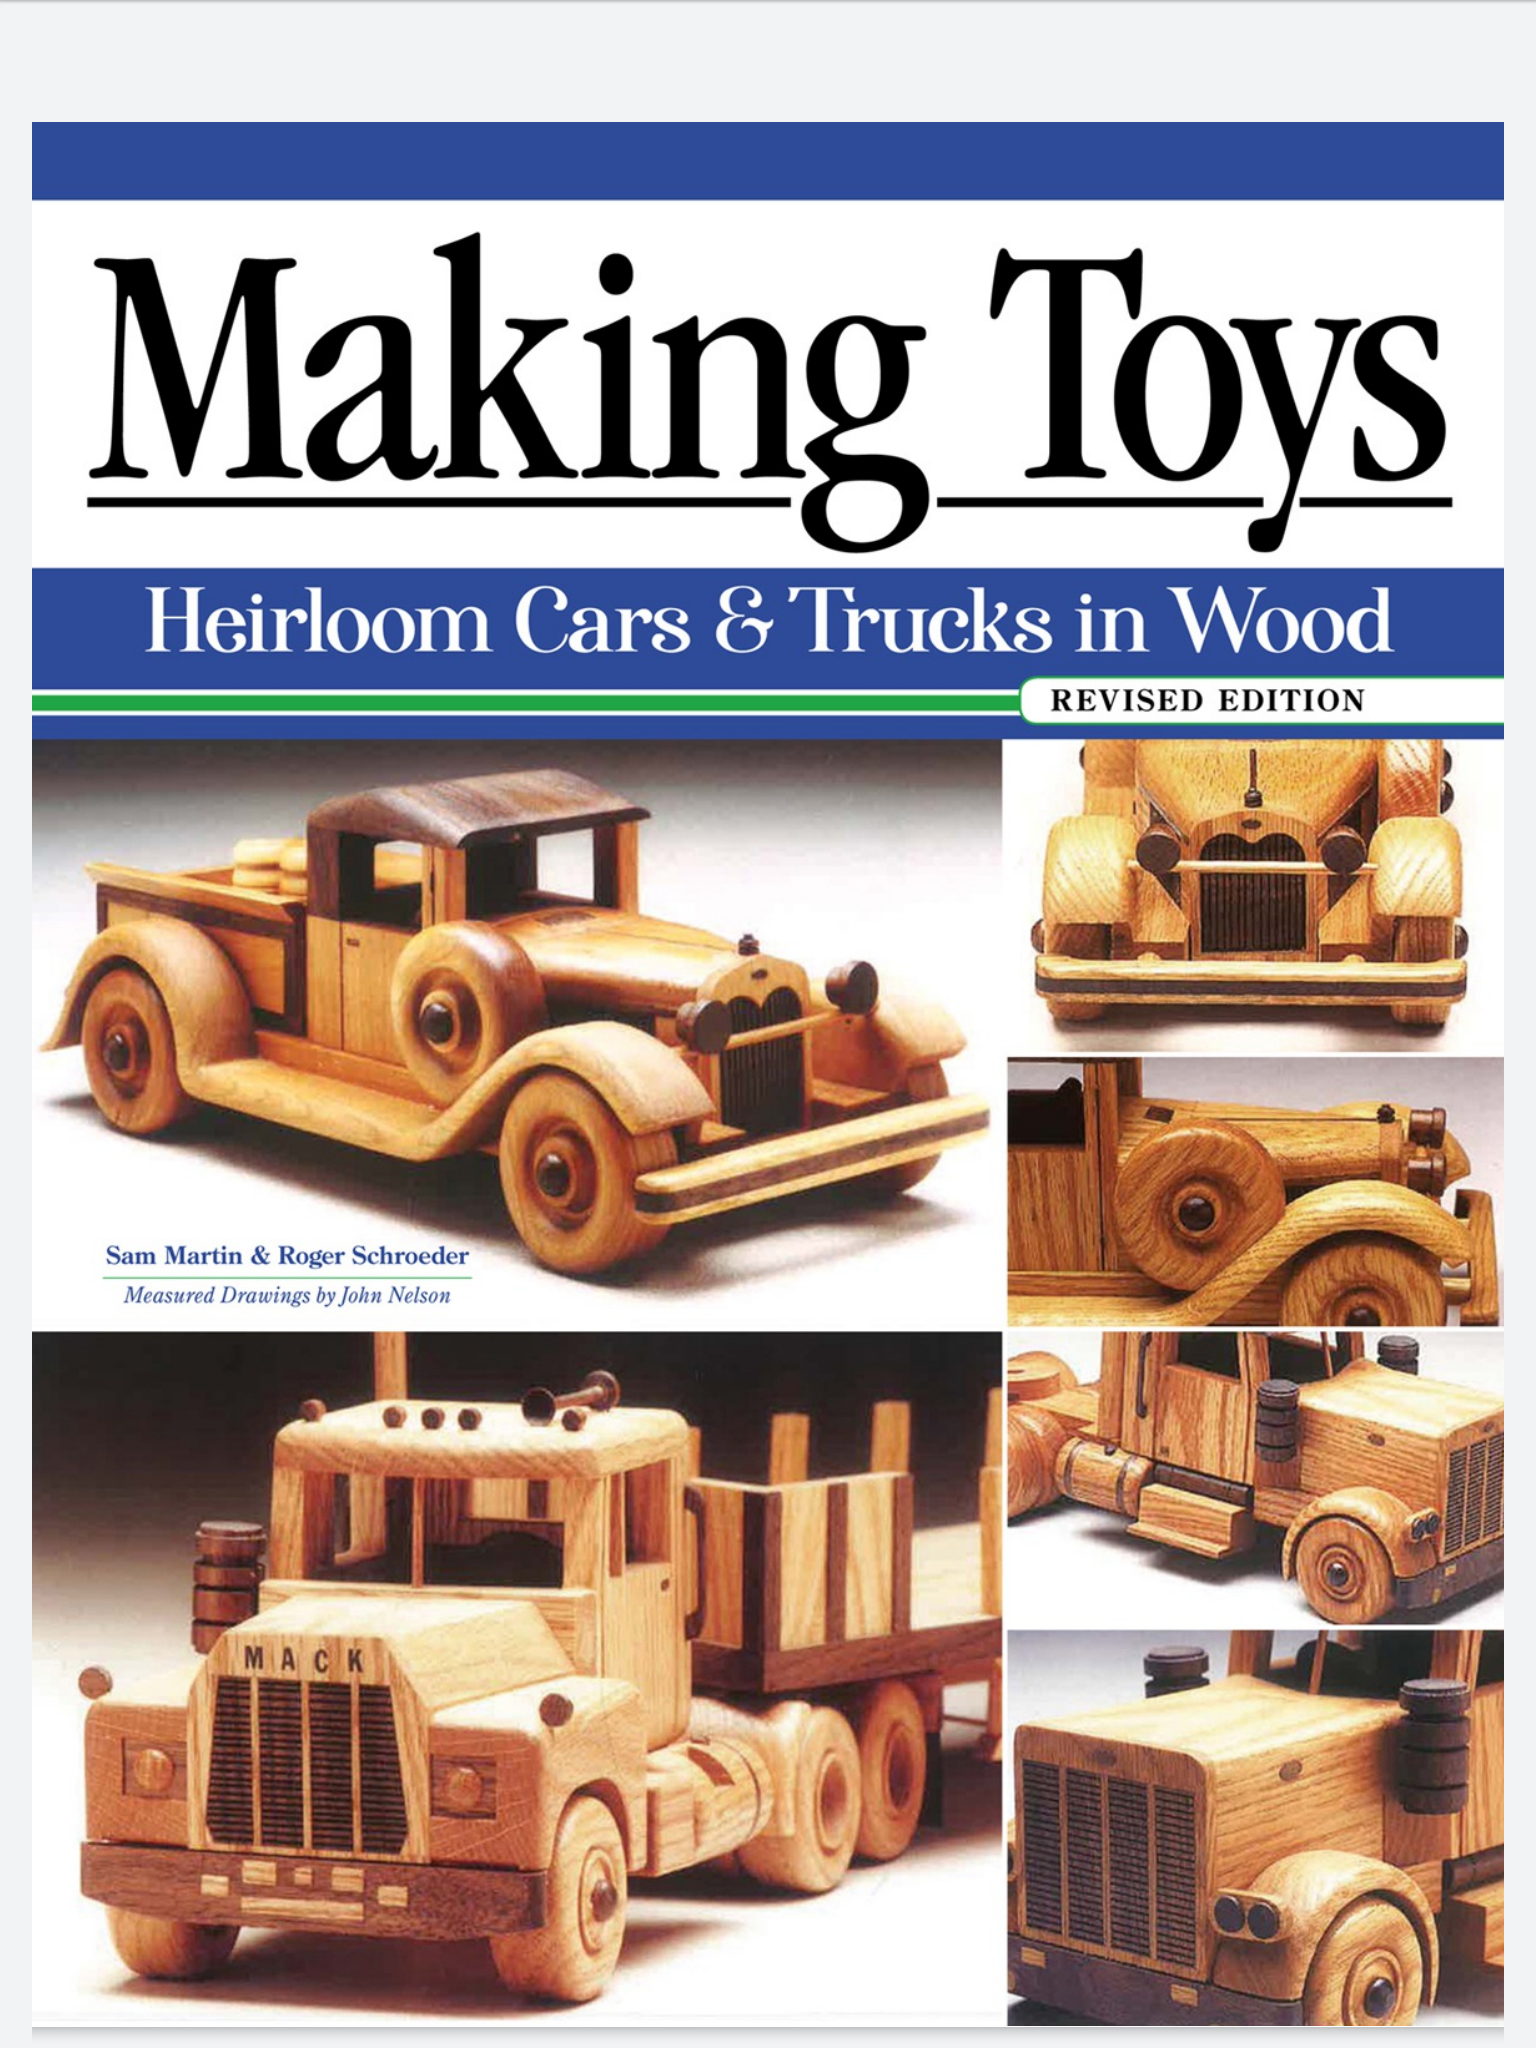  ساخت اسباب بازی چوبی. تریلر و کامیون